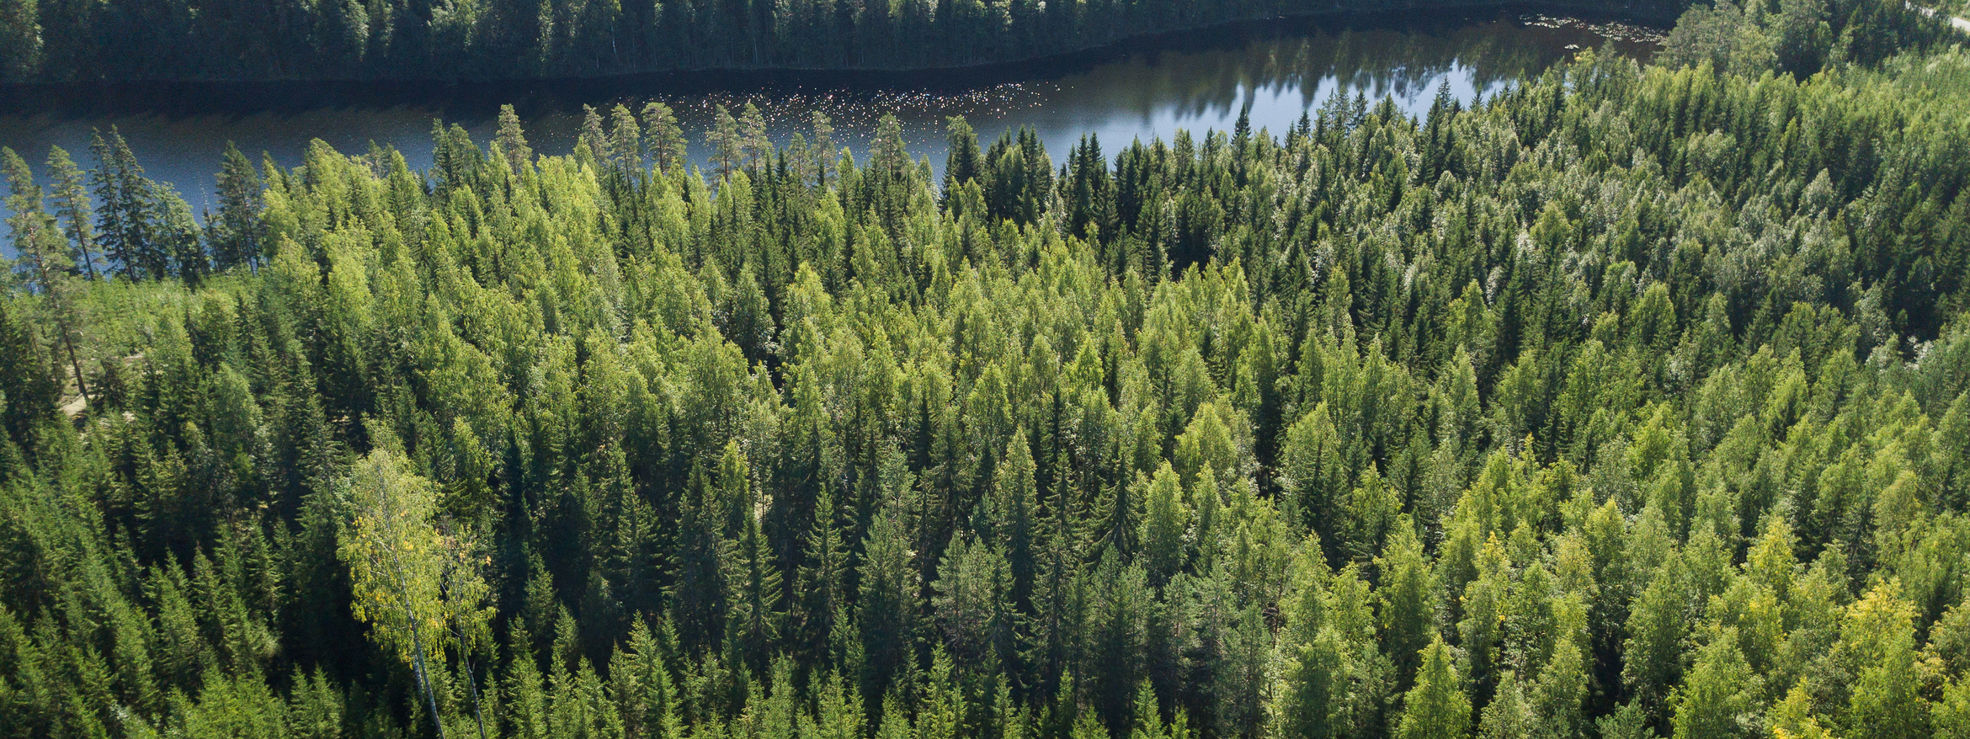 Finländskt skogslandskap, plantskog i förgrunden.